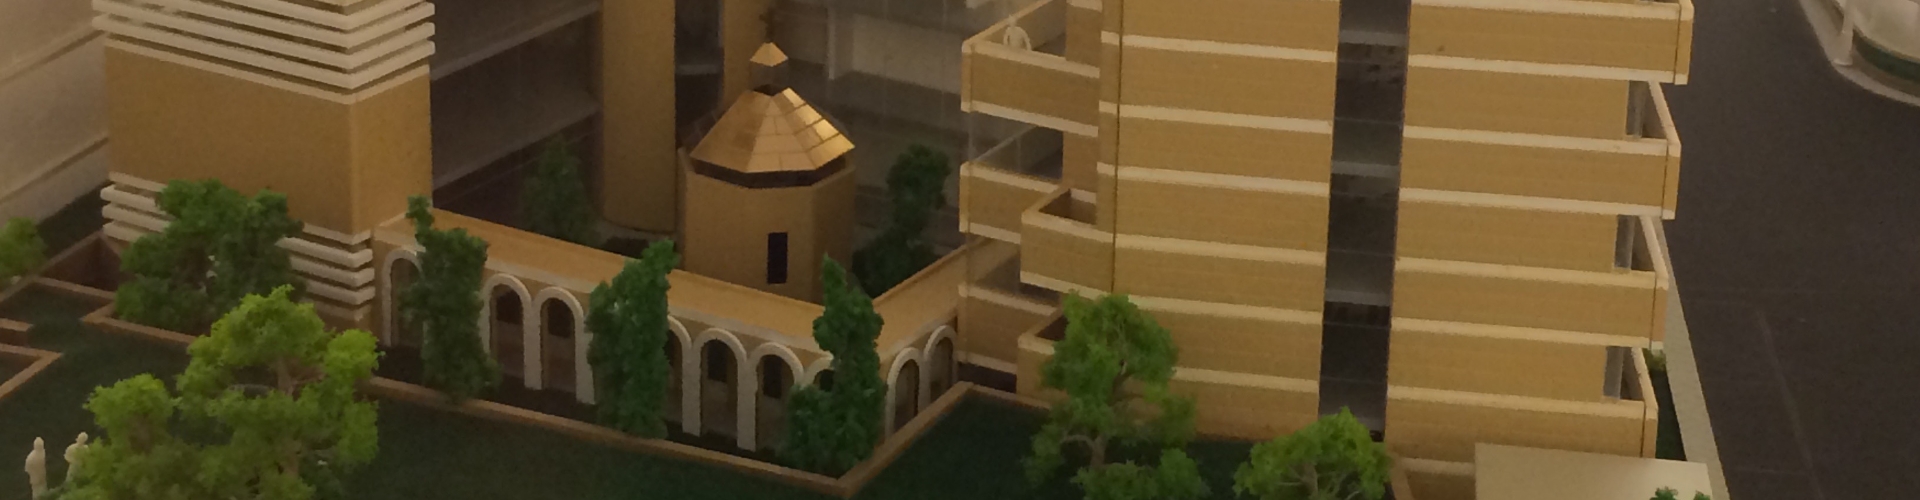 Projet de construction du Séminaire Redemptoris Mater du Liban pour la nouvelle évangélisation.